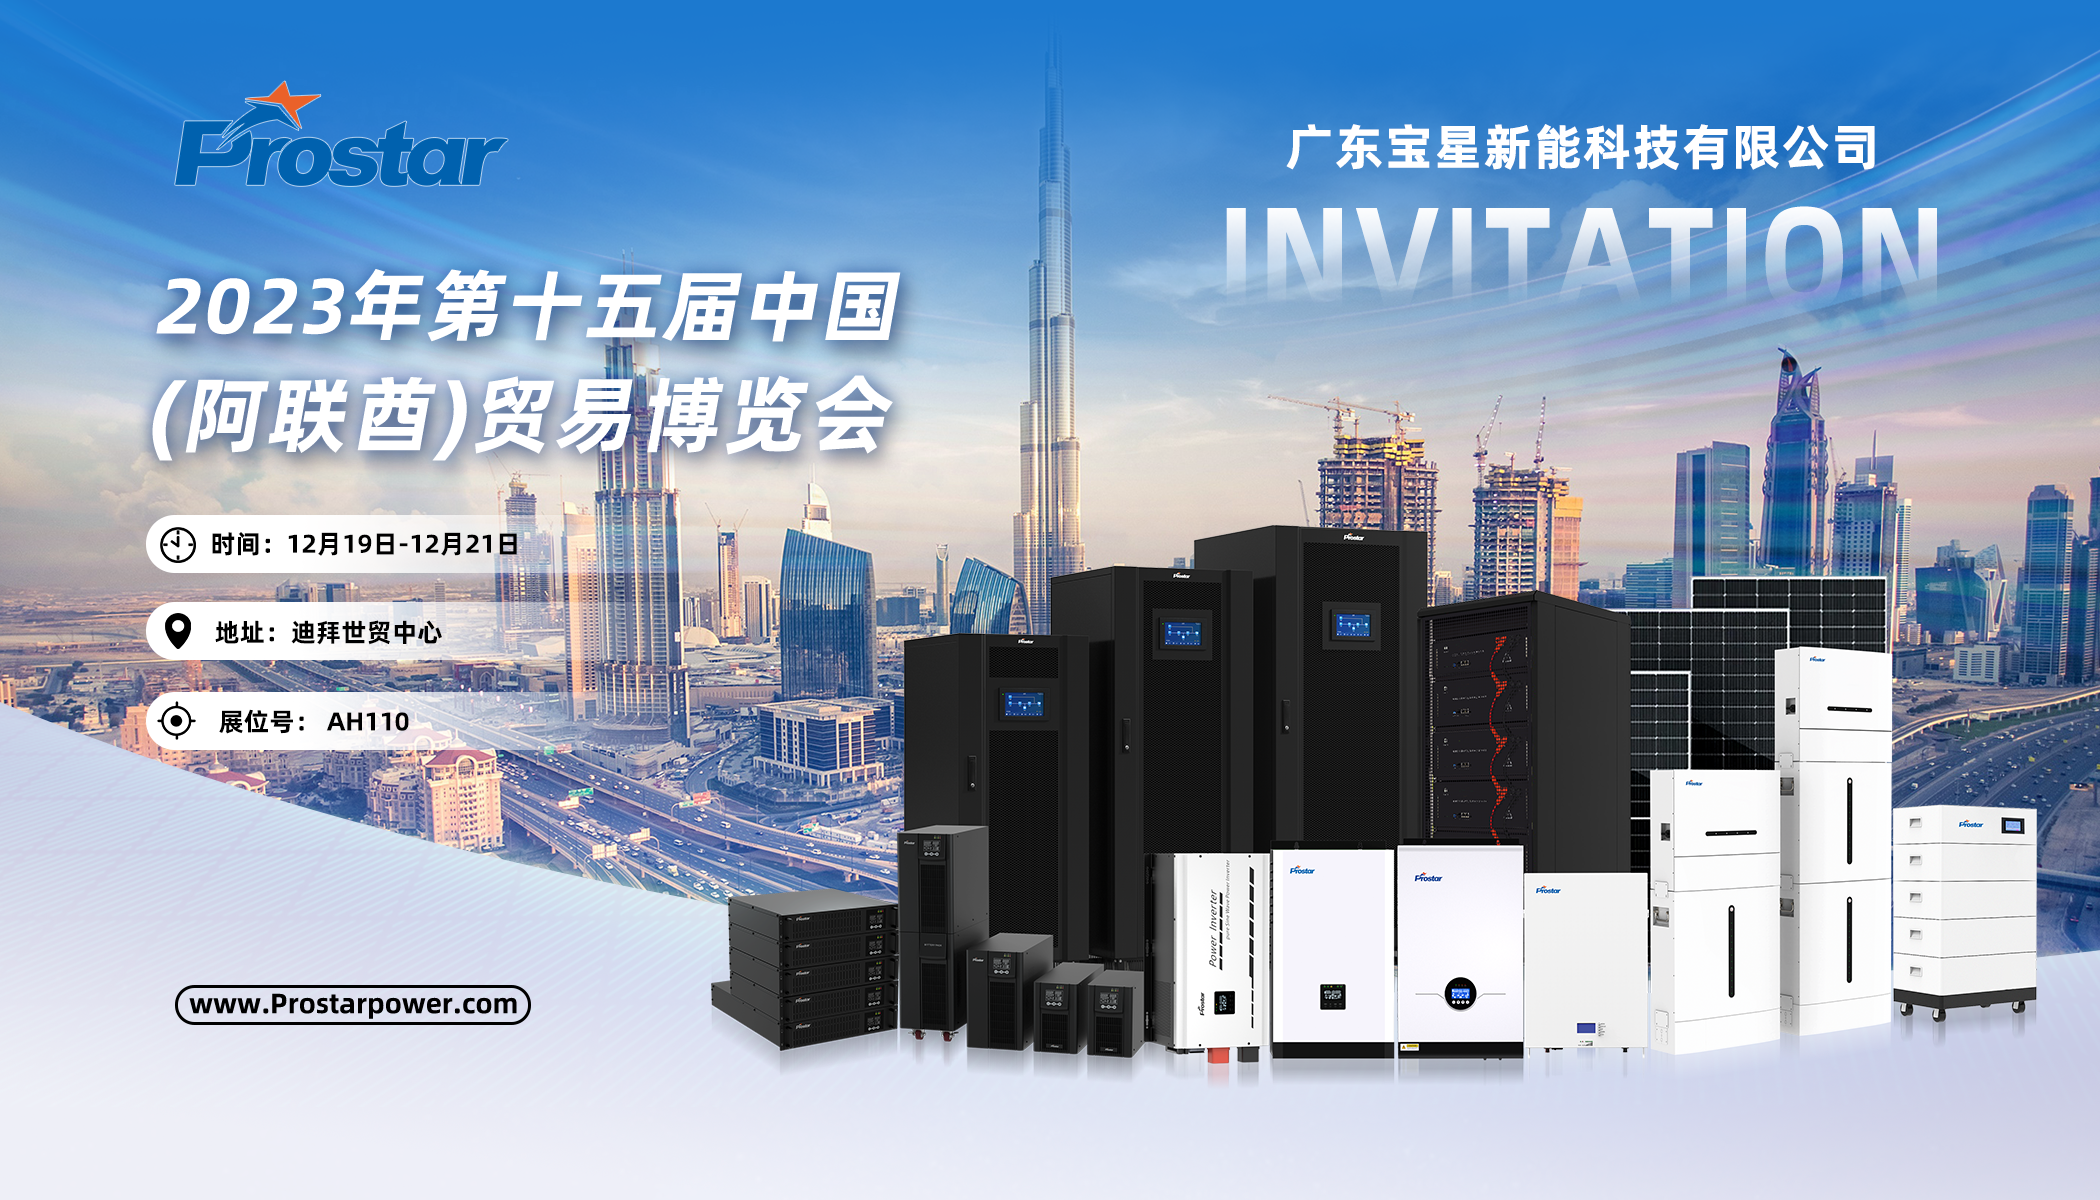 展会邀请函丨 mg官方在线电子游戏邀您相聚2023年第十五届中国 (阿联酋)贸易博览会